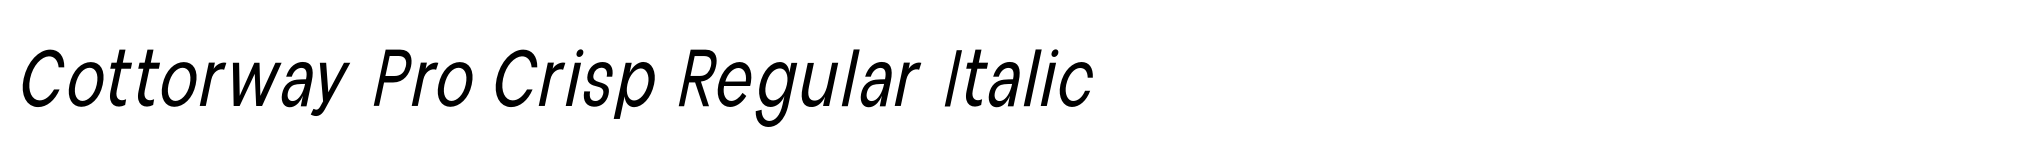 Cottorway Pro Crisp Regular Italic image